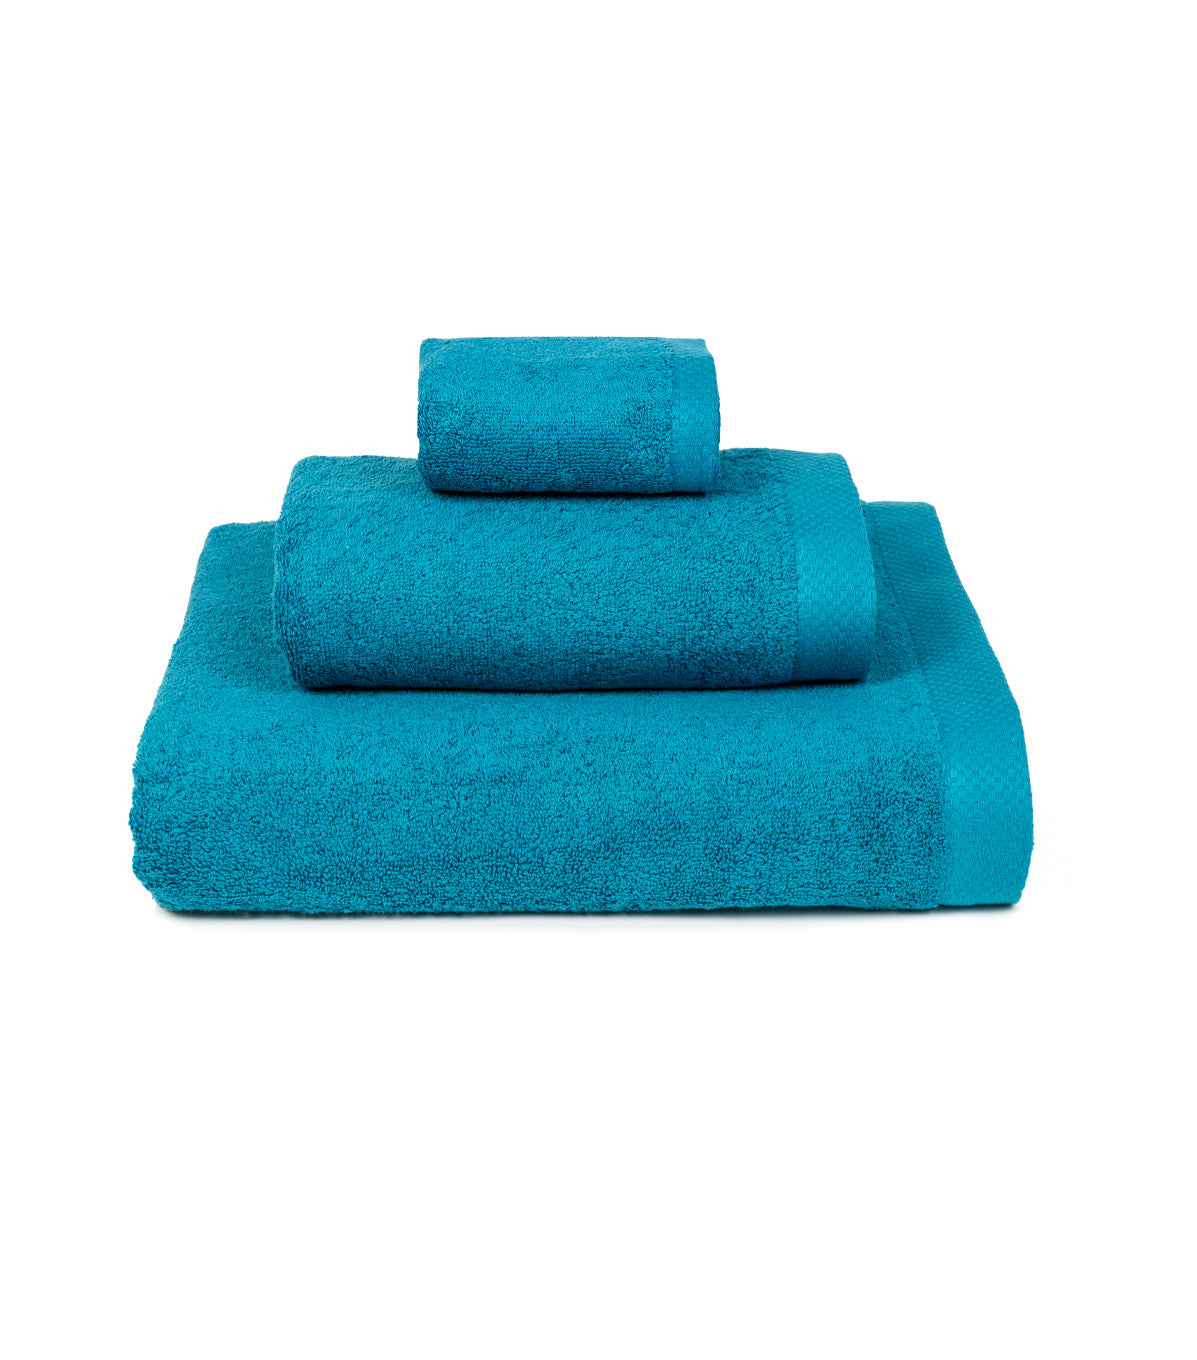 Luxus Bath Towel Set - Petroleum Blue One Size Torres Novas